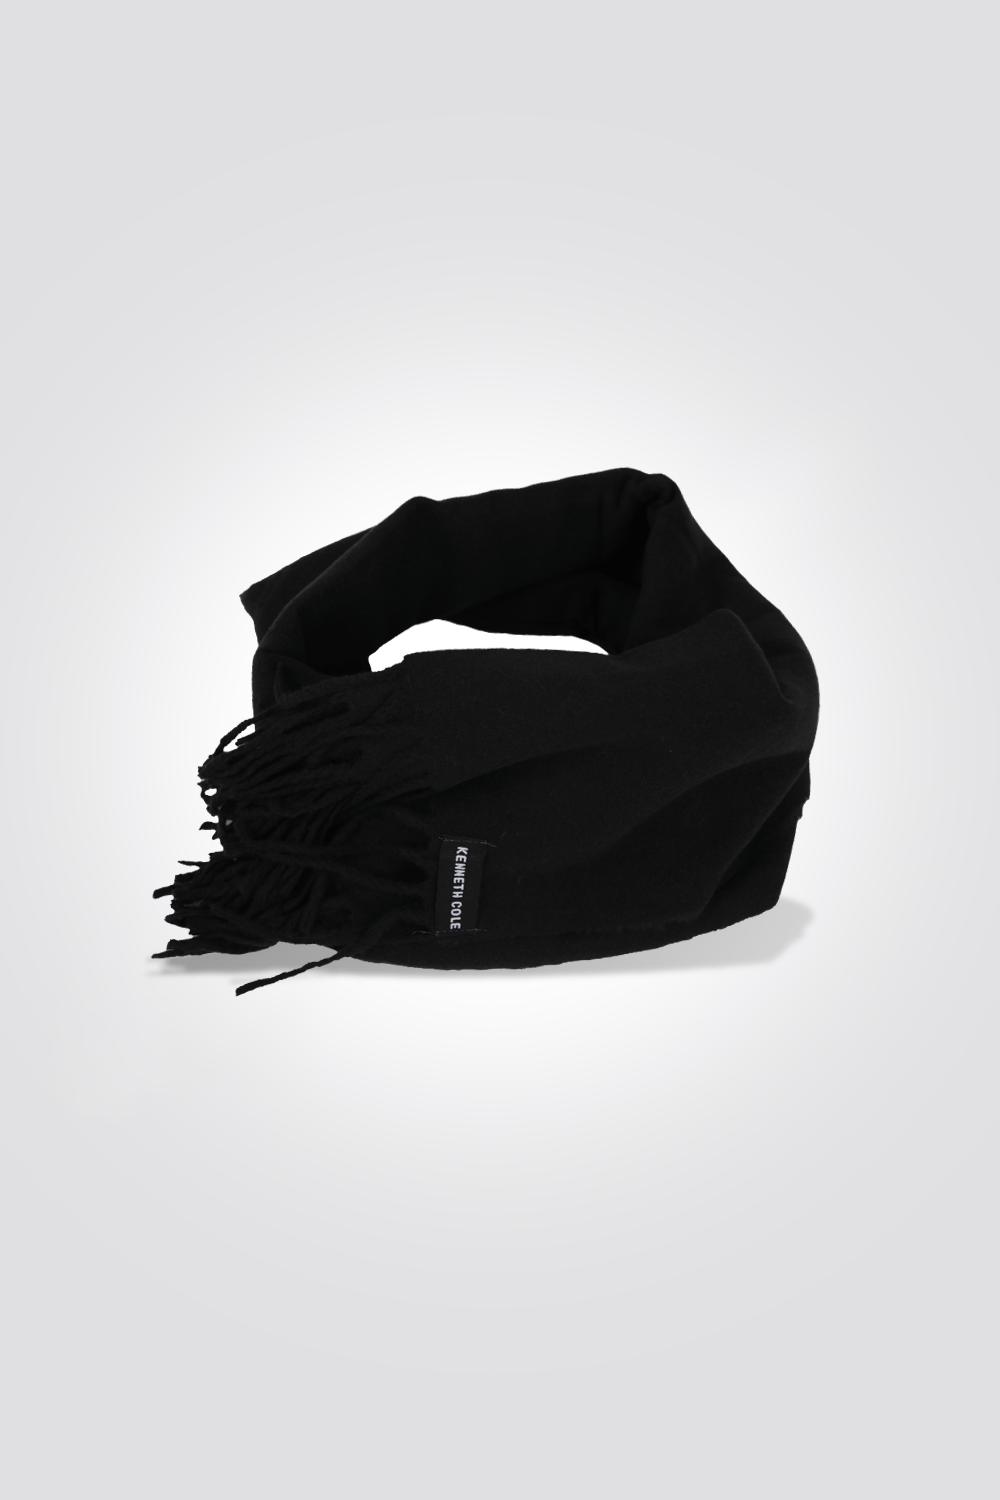 KENNETH COLE - צעיף לנשים בצבע שחור - MASHBIR//365